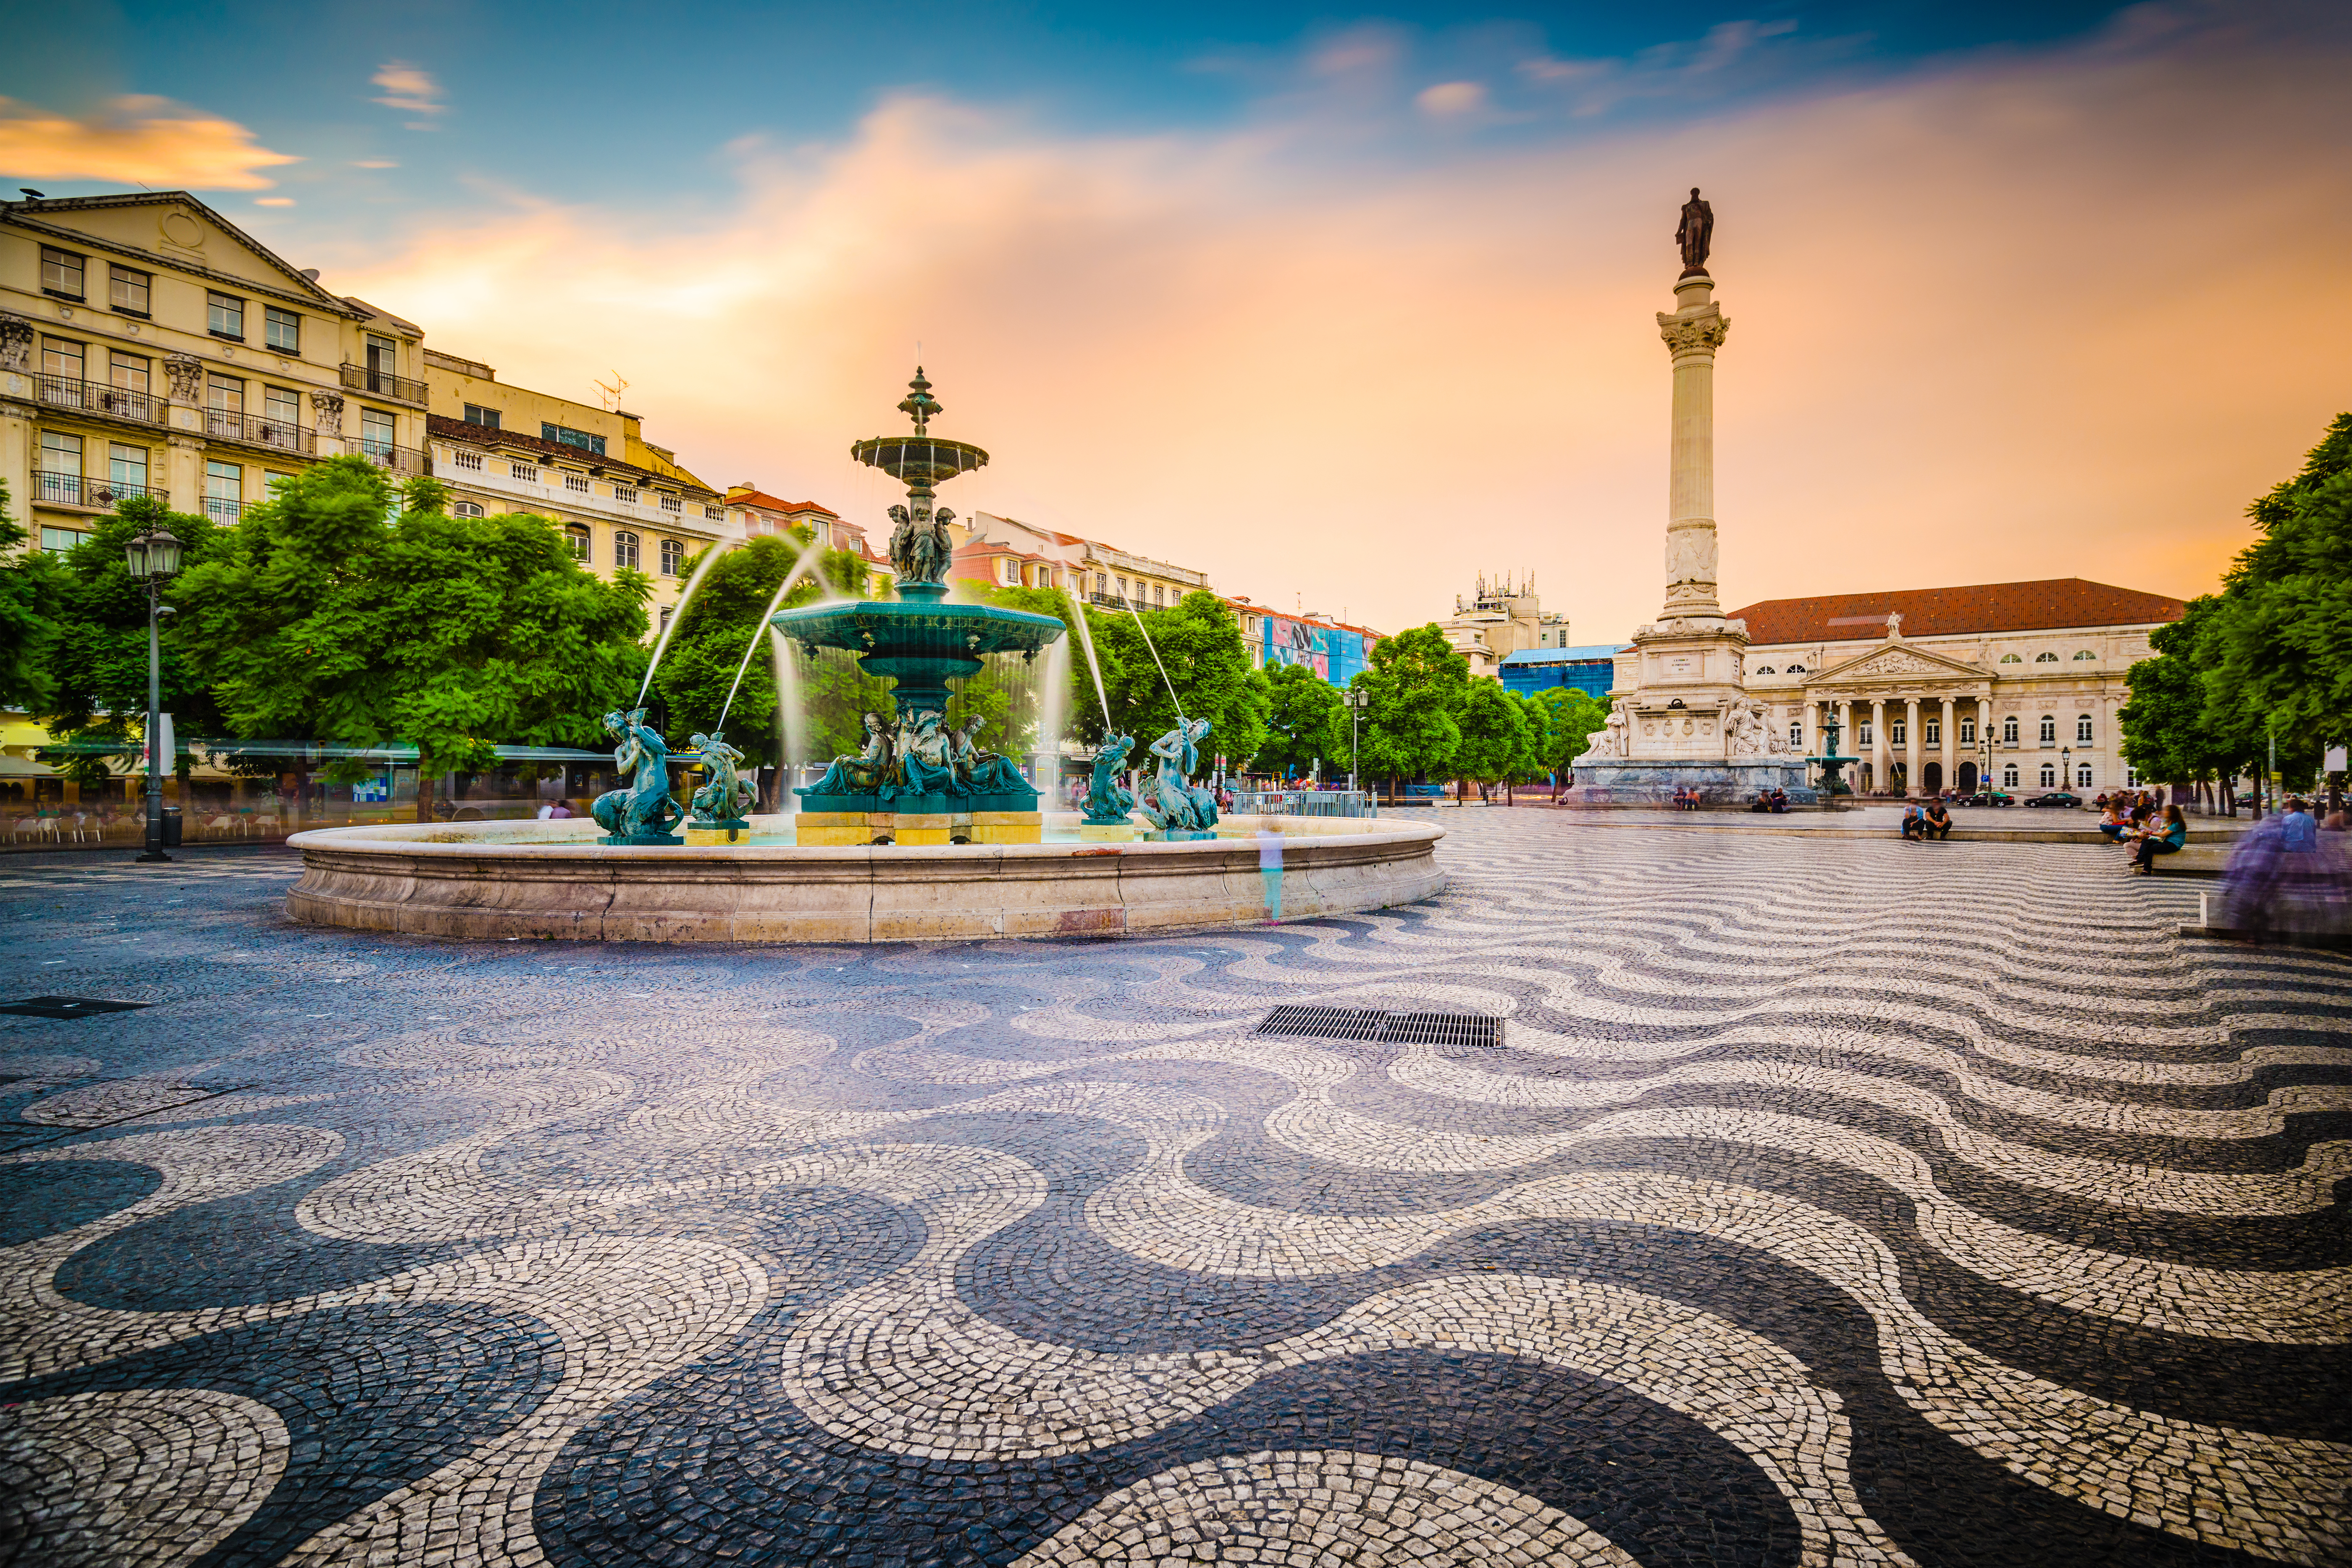 Португальский городок в который можно переехать с ВНЖ Португалии